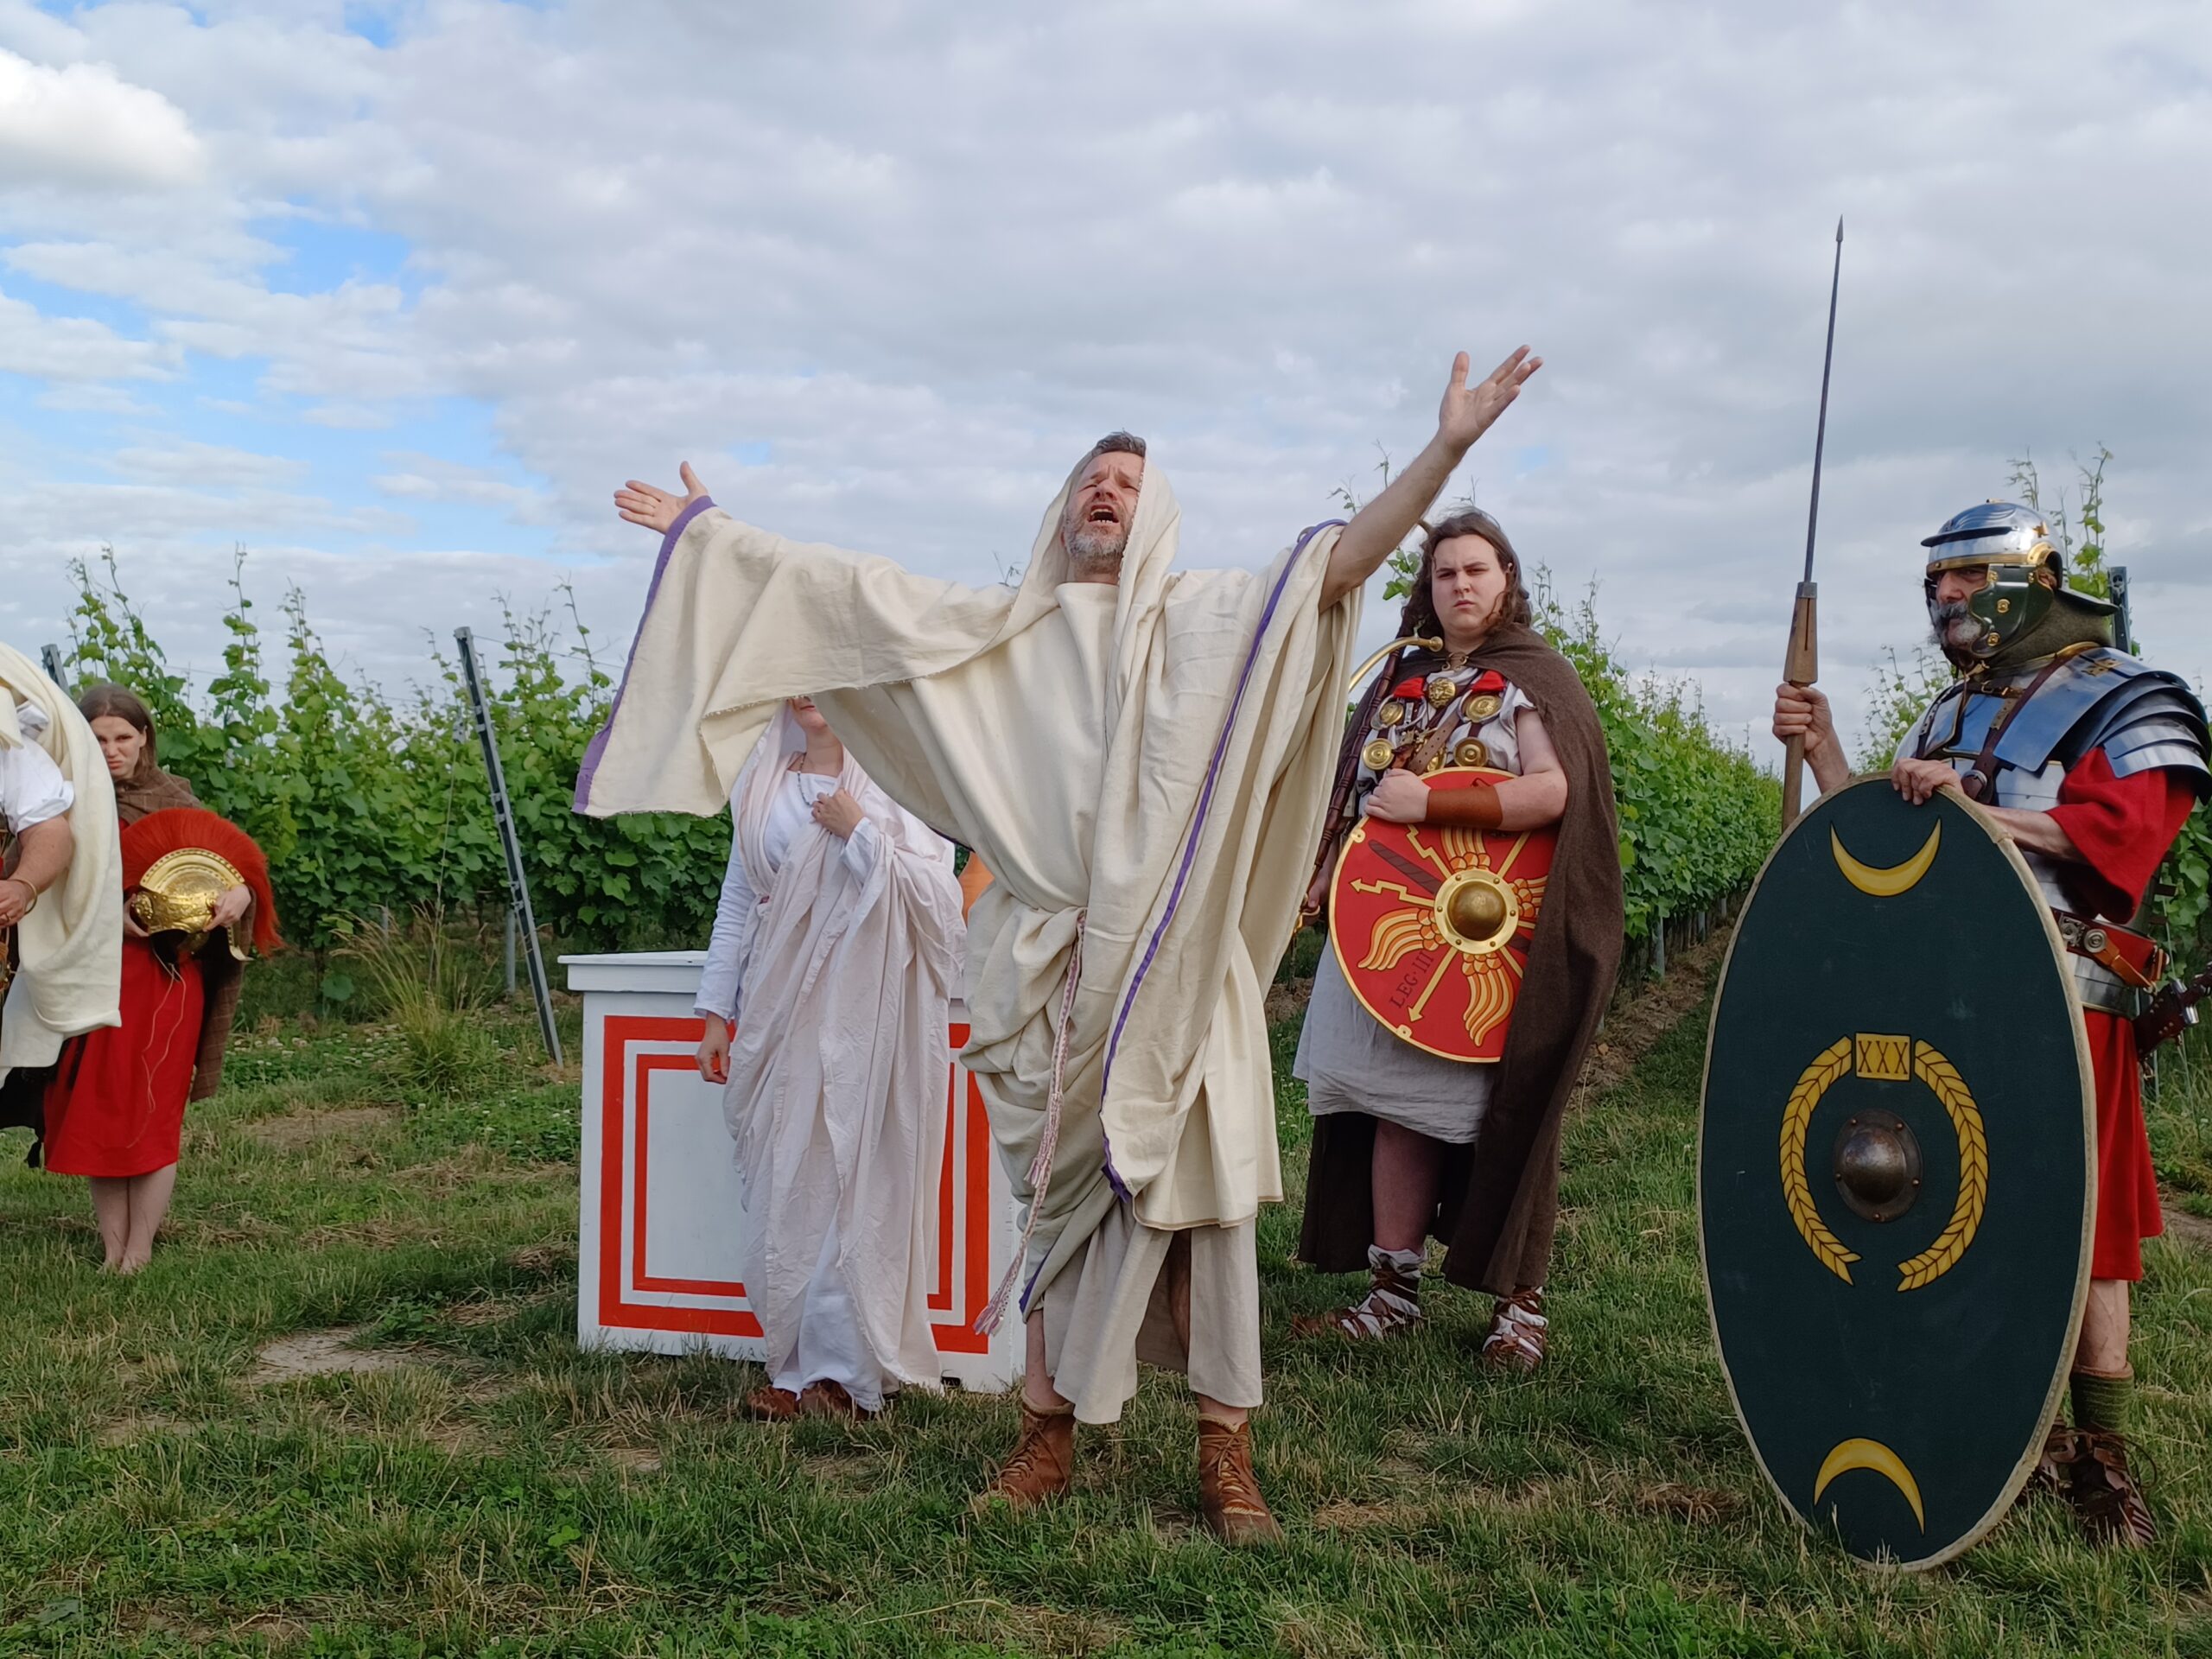 Romani sunt in vinea! Romeinse wijngaardzegening in Wervik